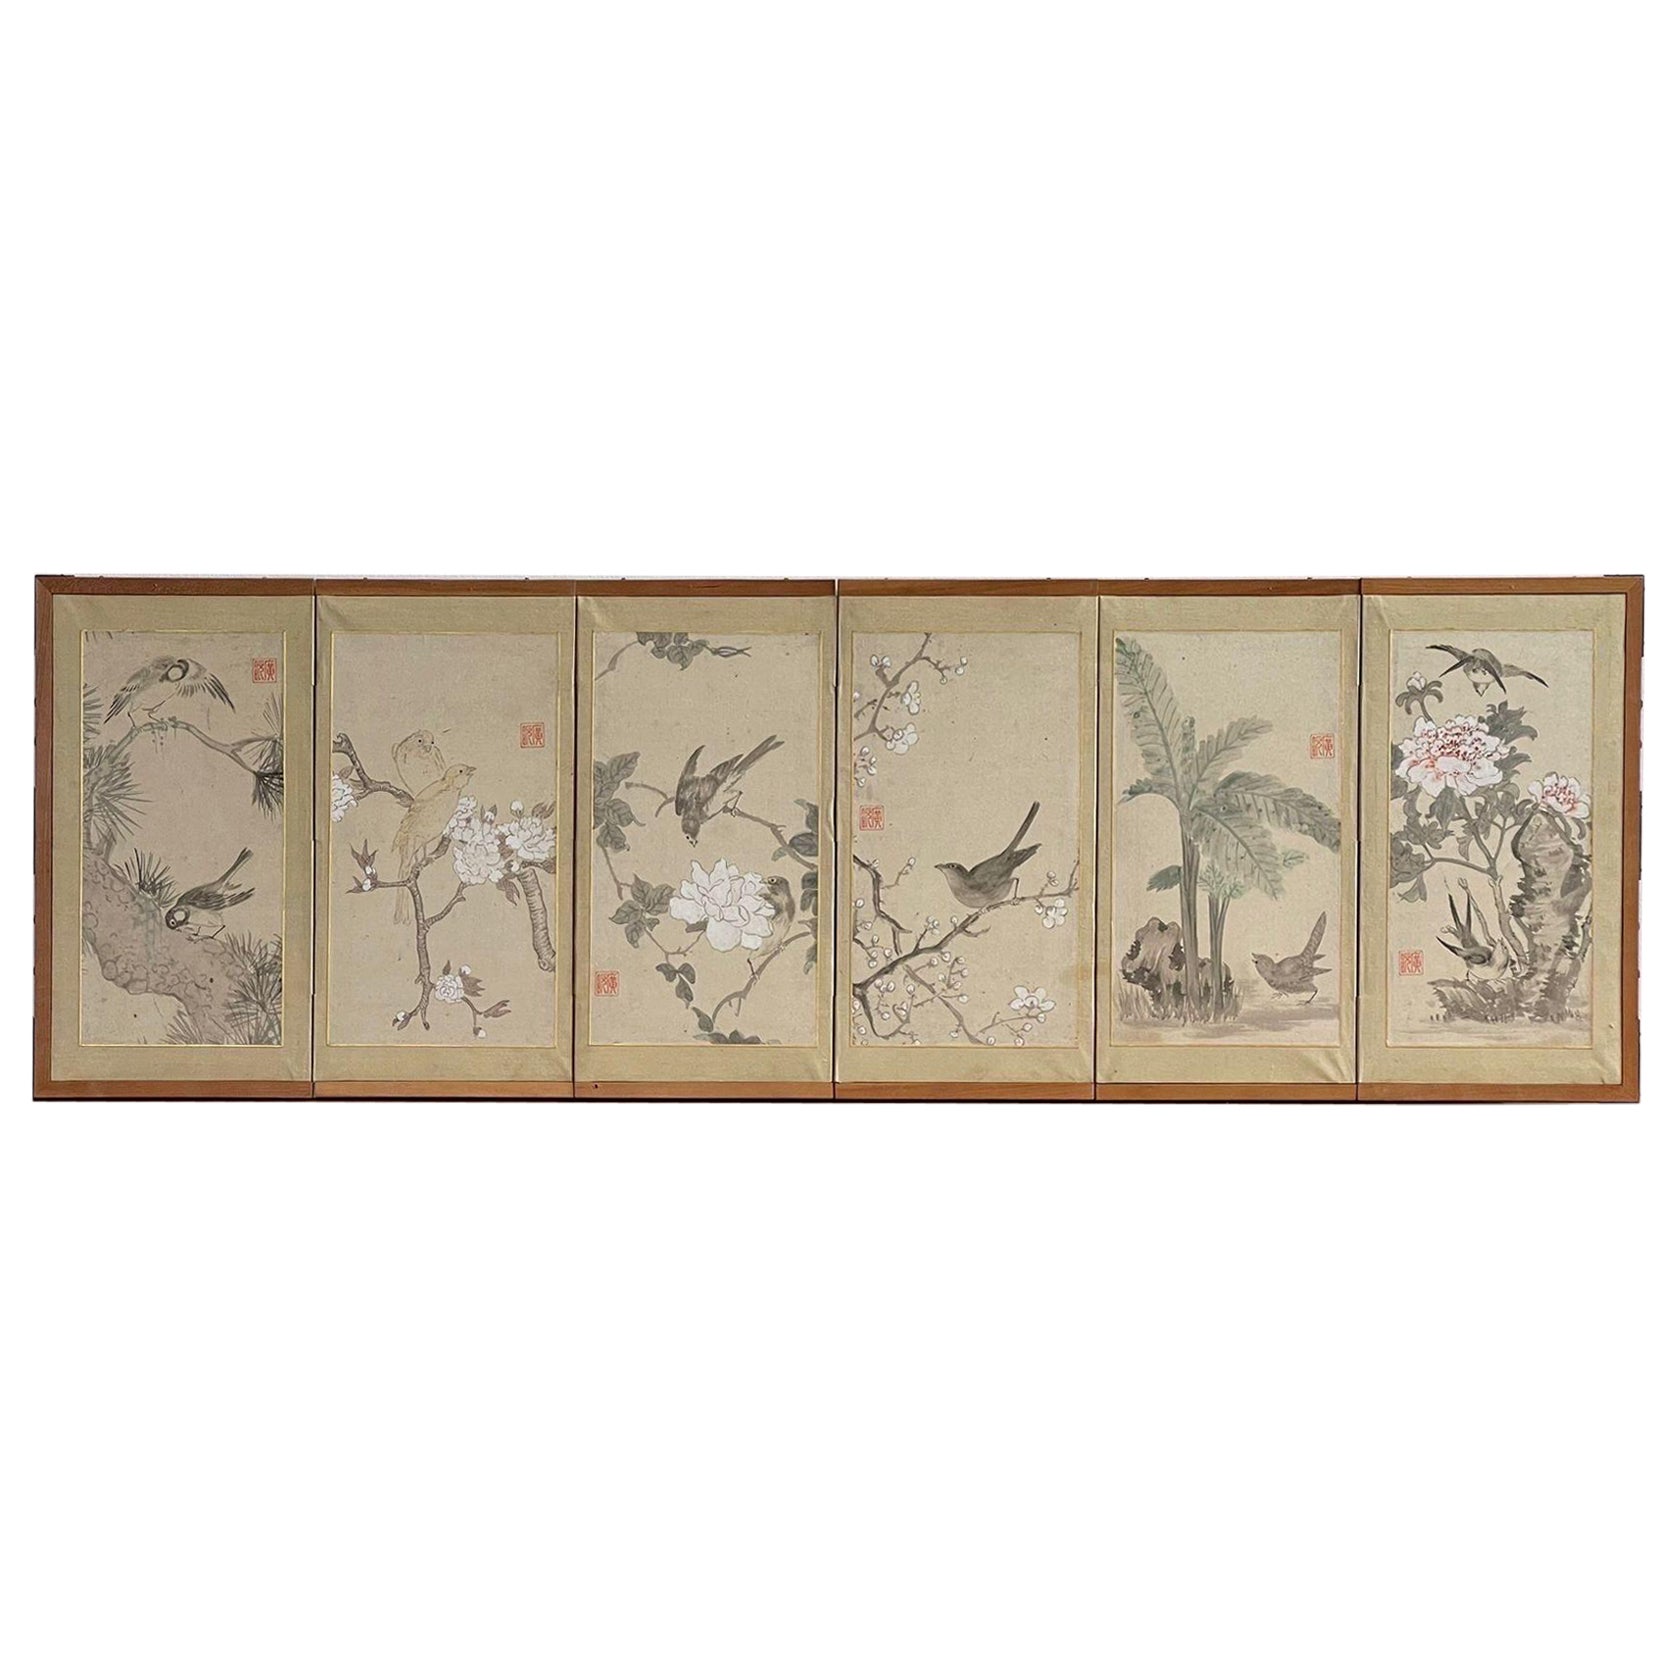 Gerahmtes und signiertes japanisches Vintage-Gemälde mit 6 Tafeln im Vintage-Stil in Holzrahmen.